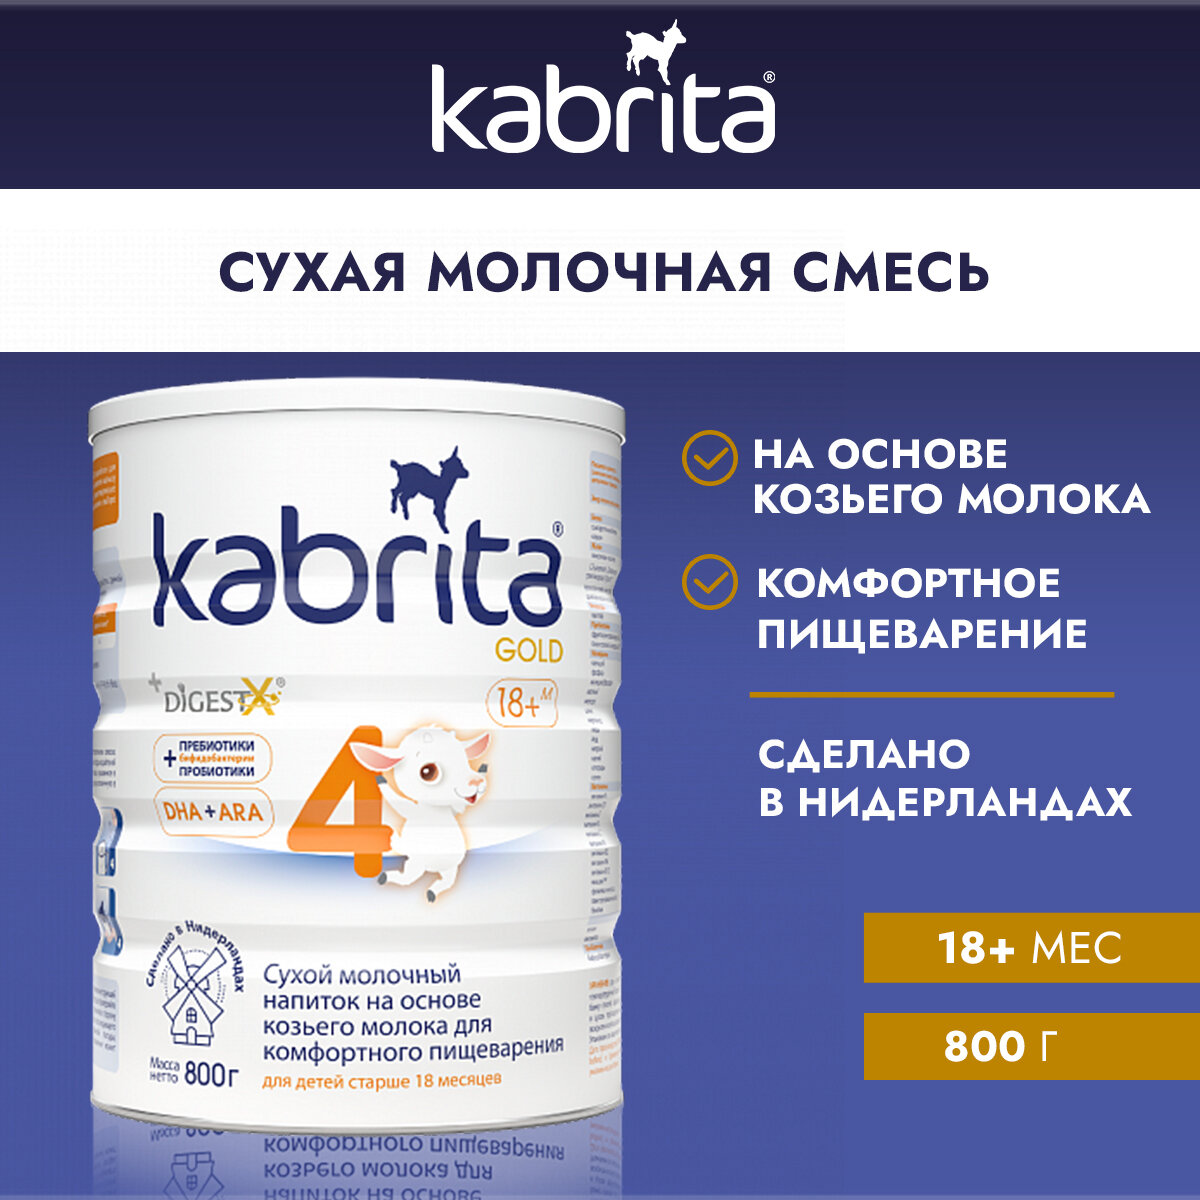 Сухой молочный напиток Kabrita 4 Gold на основе козьего молока, для комфортного пищеварения, 800гр - фото №19